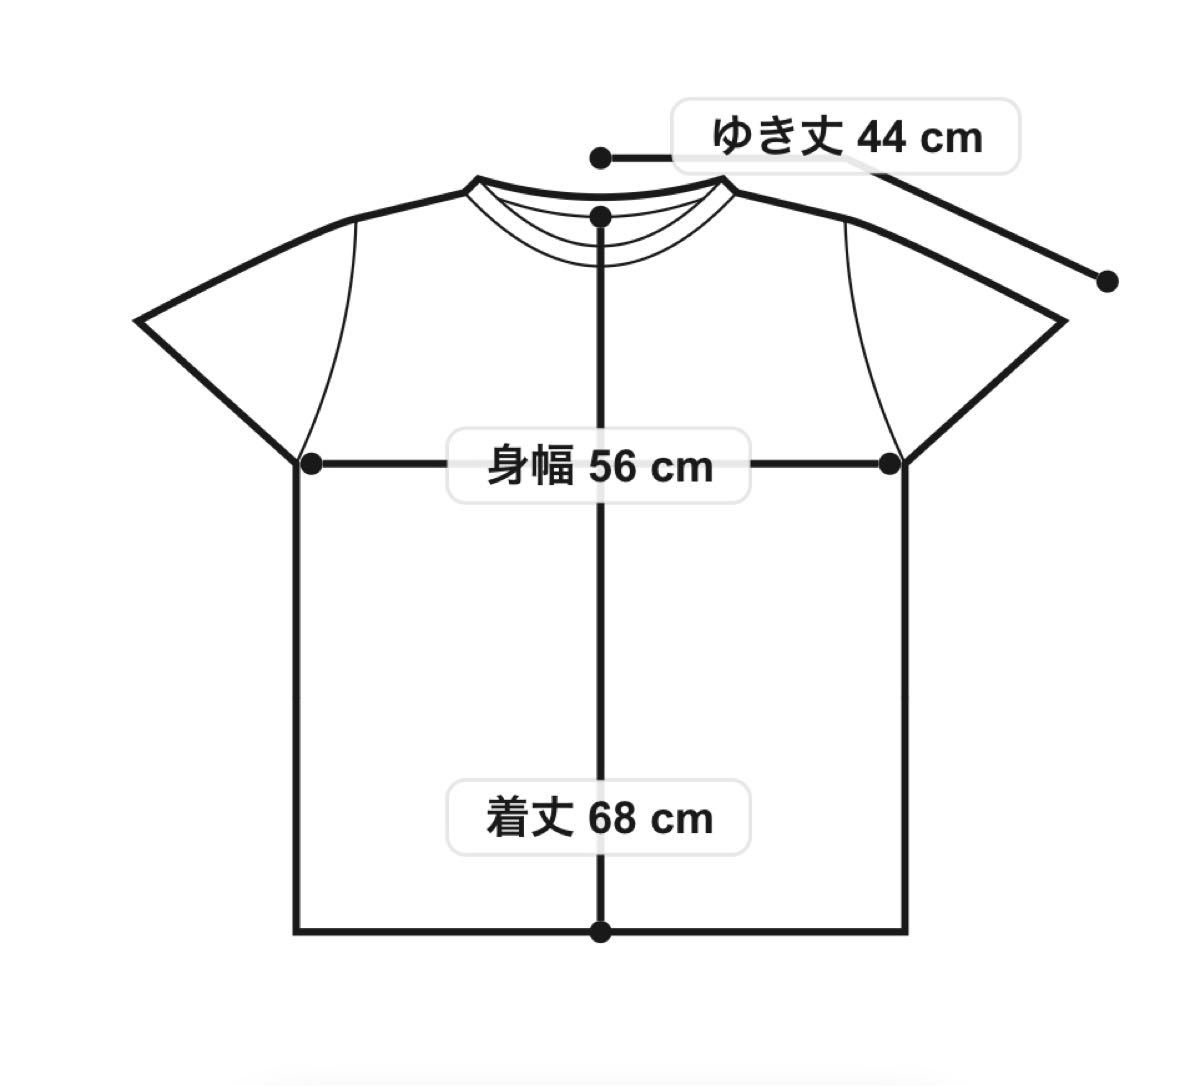 新品リーバイスロゴTシャツ BLACK GRAPHIC 半袖Tシャツ/日本人サイズXXL細身